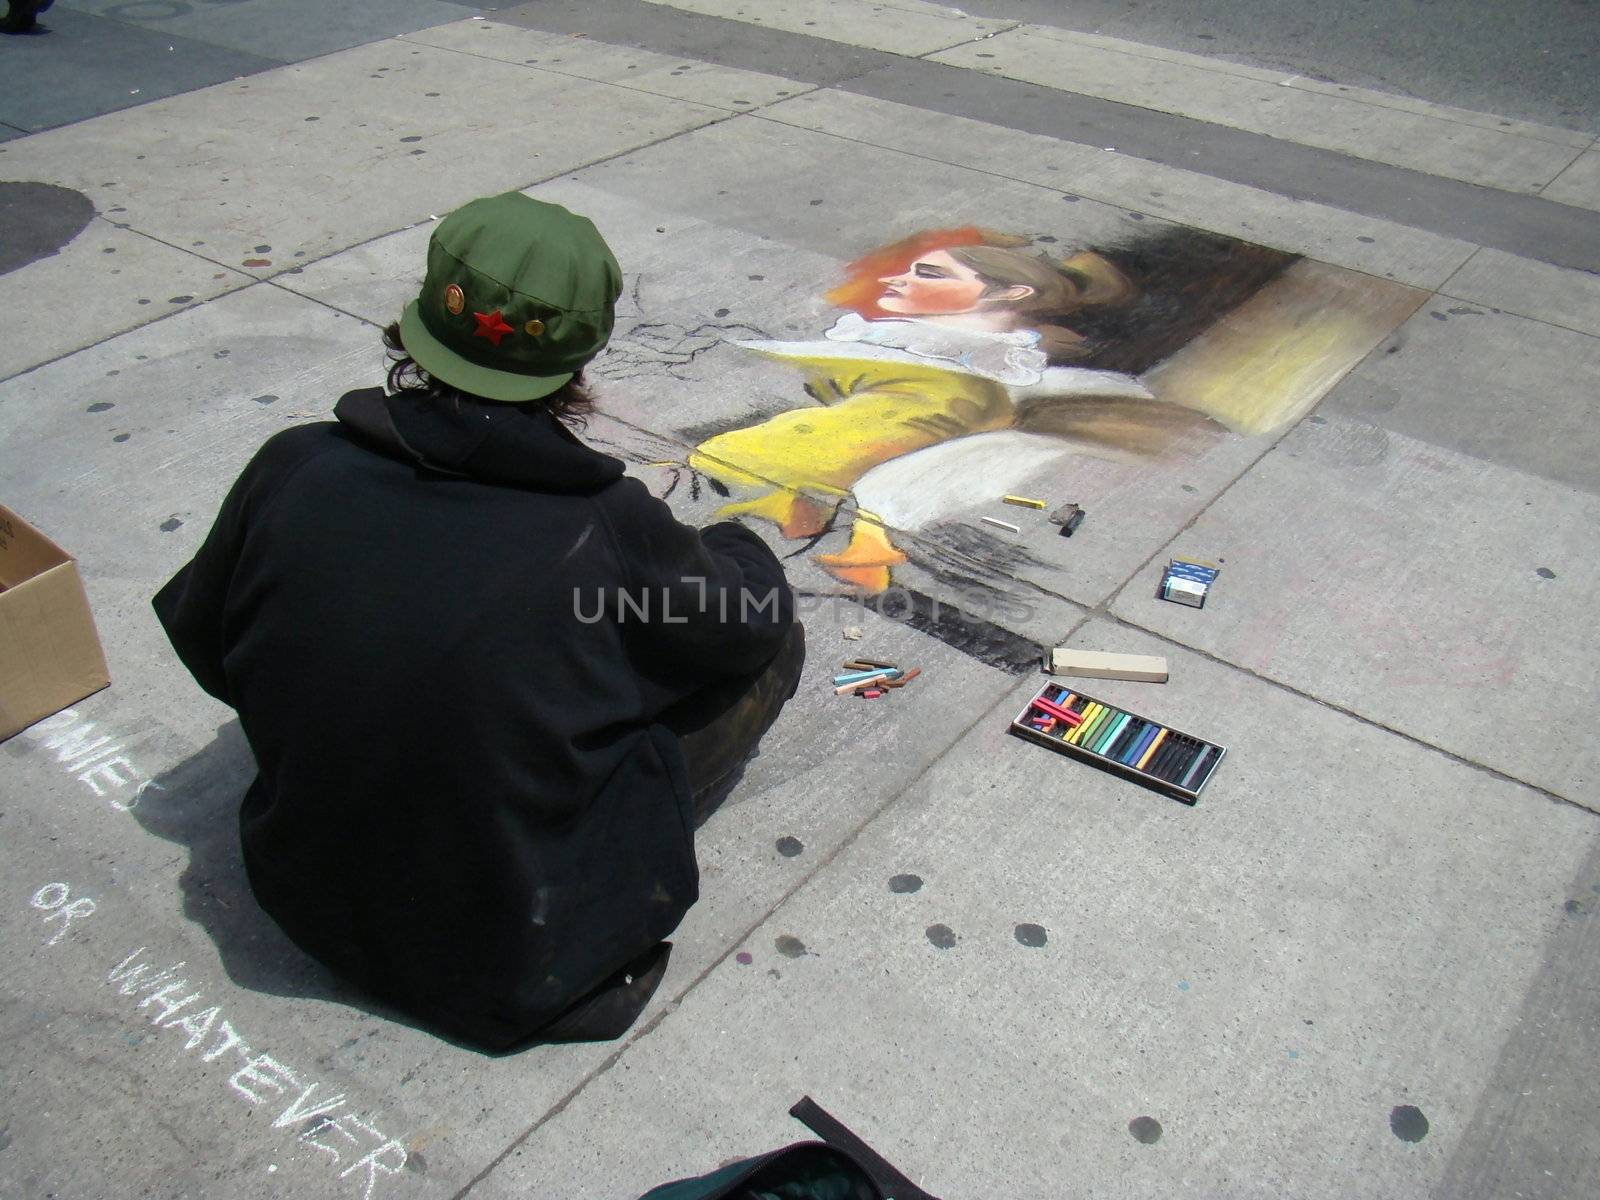 Sidewalk Chalk Artist by hicster